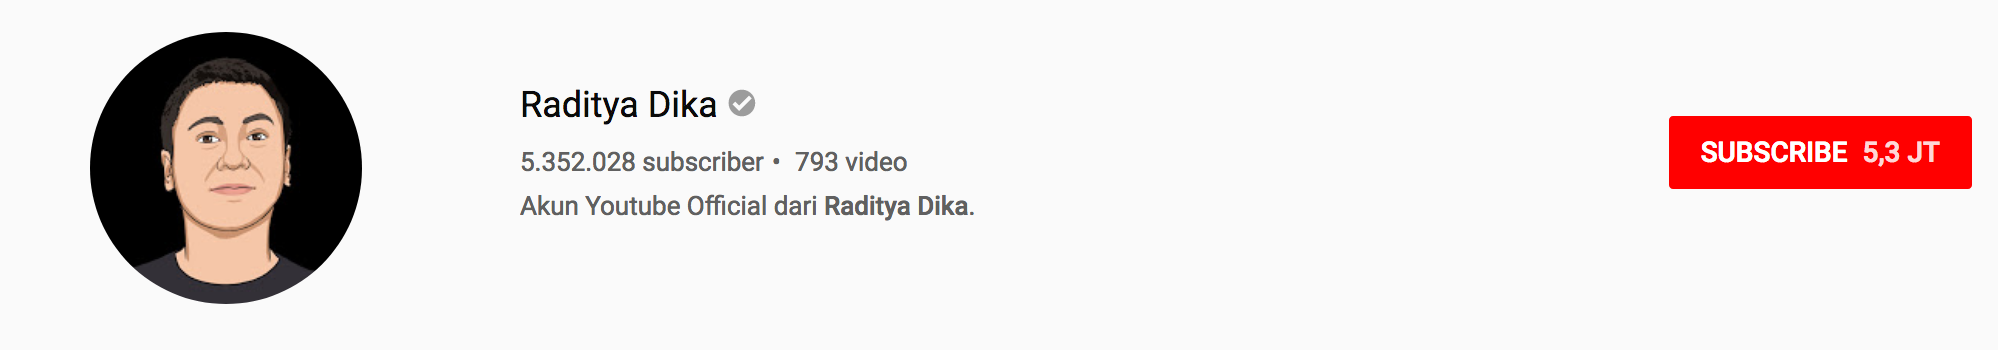 Raditya Dika Youtube Channel